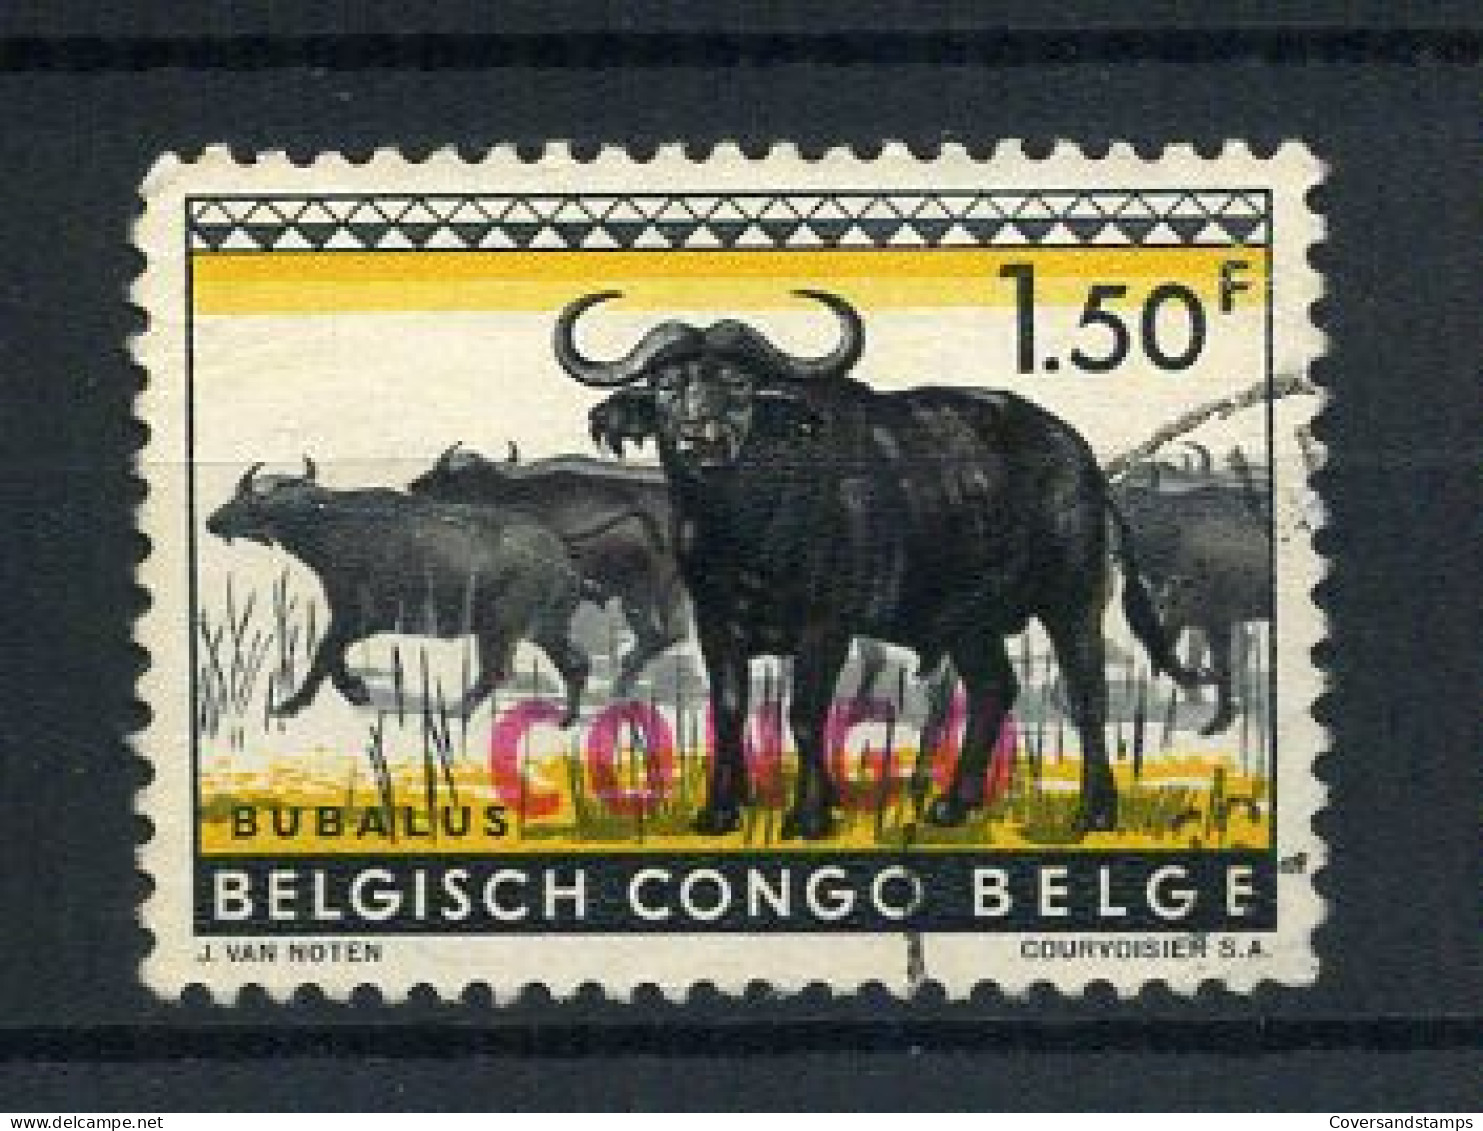 Republiek Congo / République Du Congo 405 - Gest / Obl / Used - Used Stamps